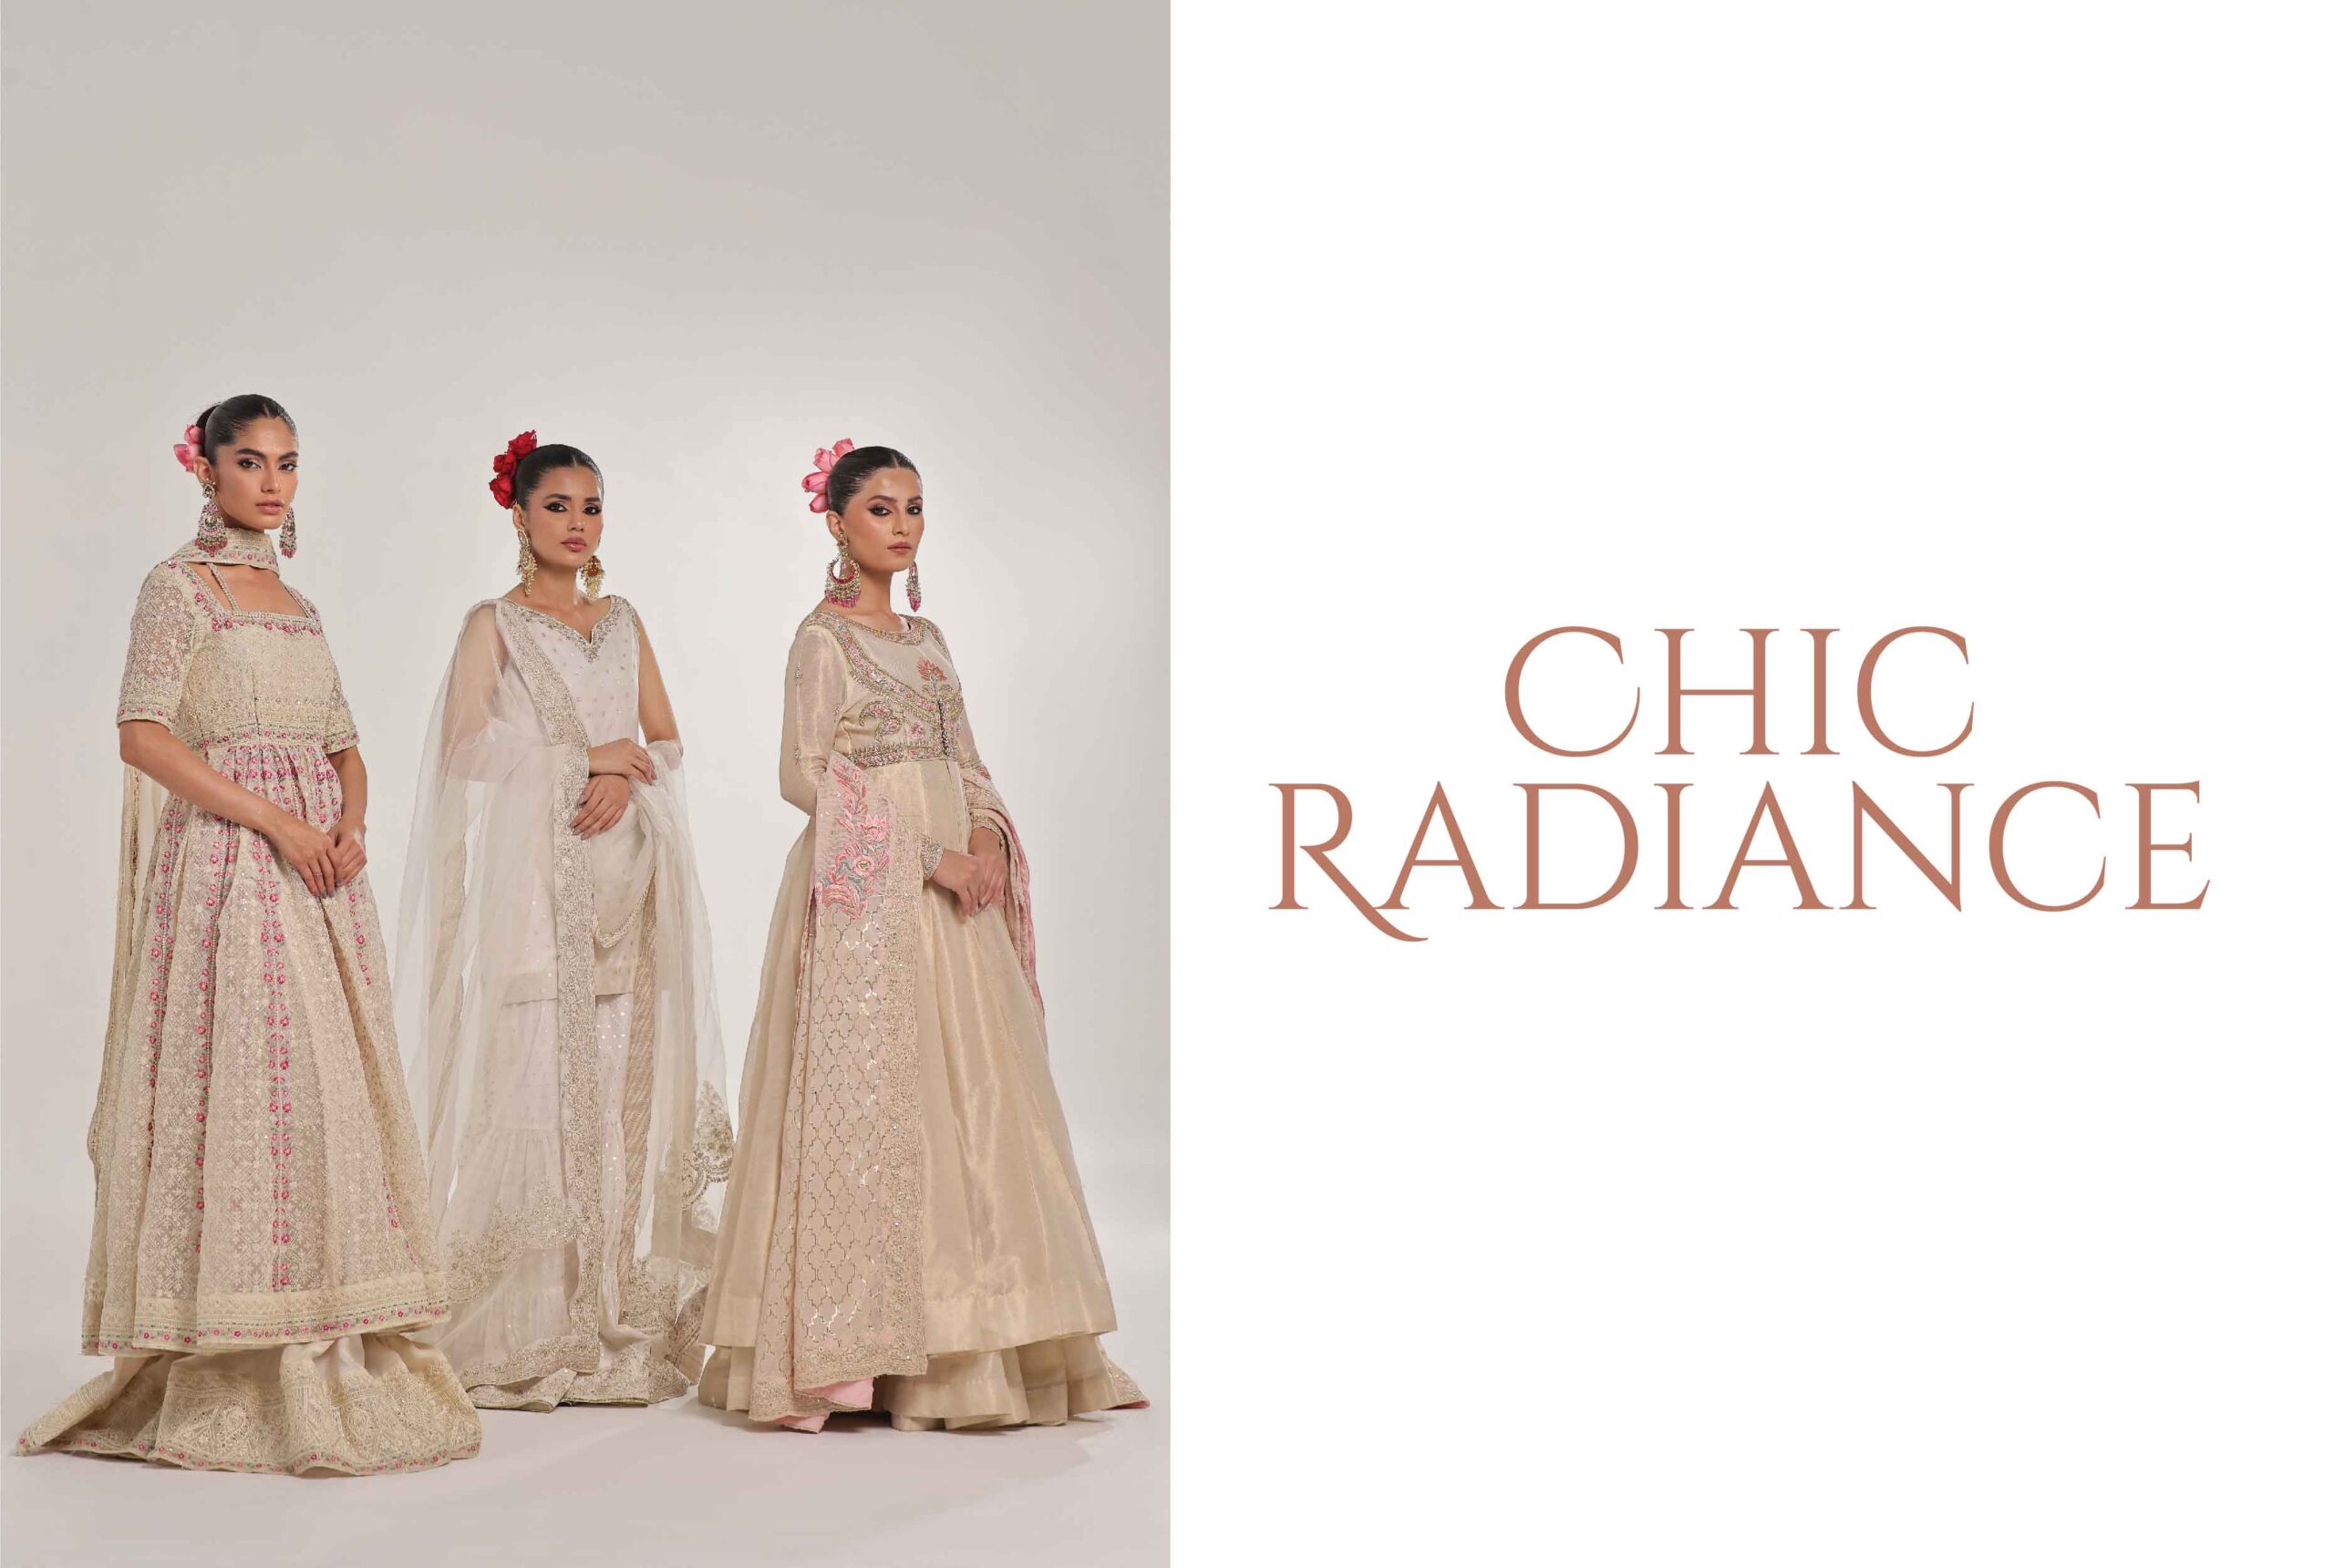 Chic Radiance-Ersa Batool, Faiza Ashfaq & Aleeza Khan